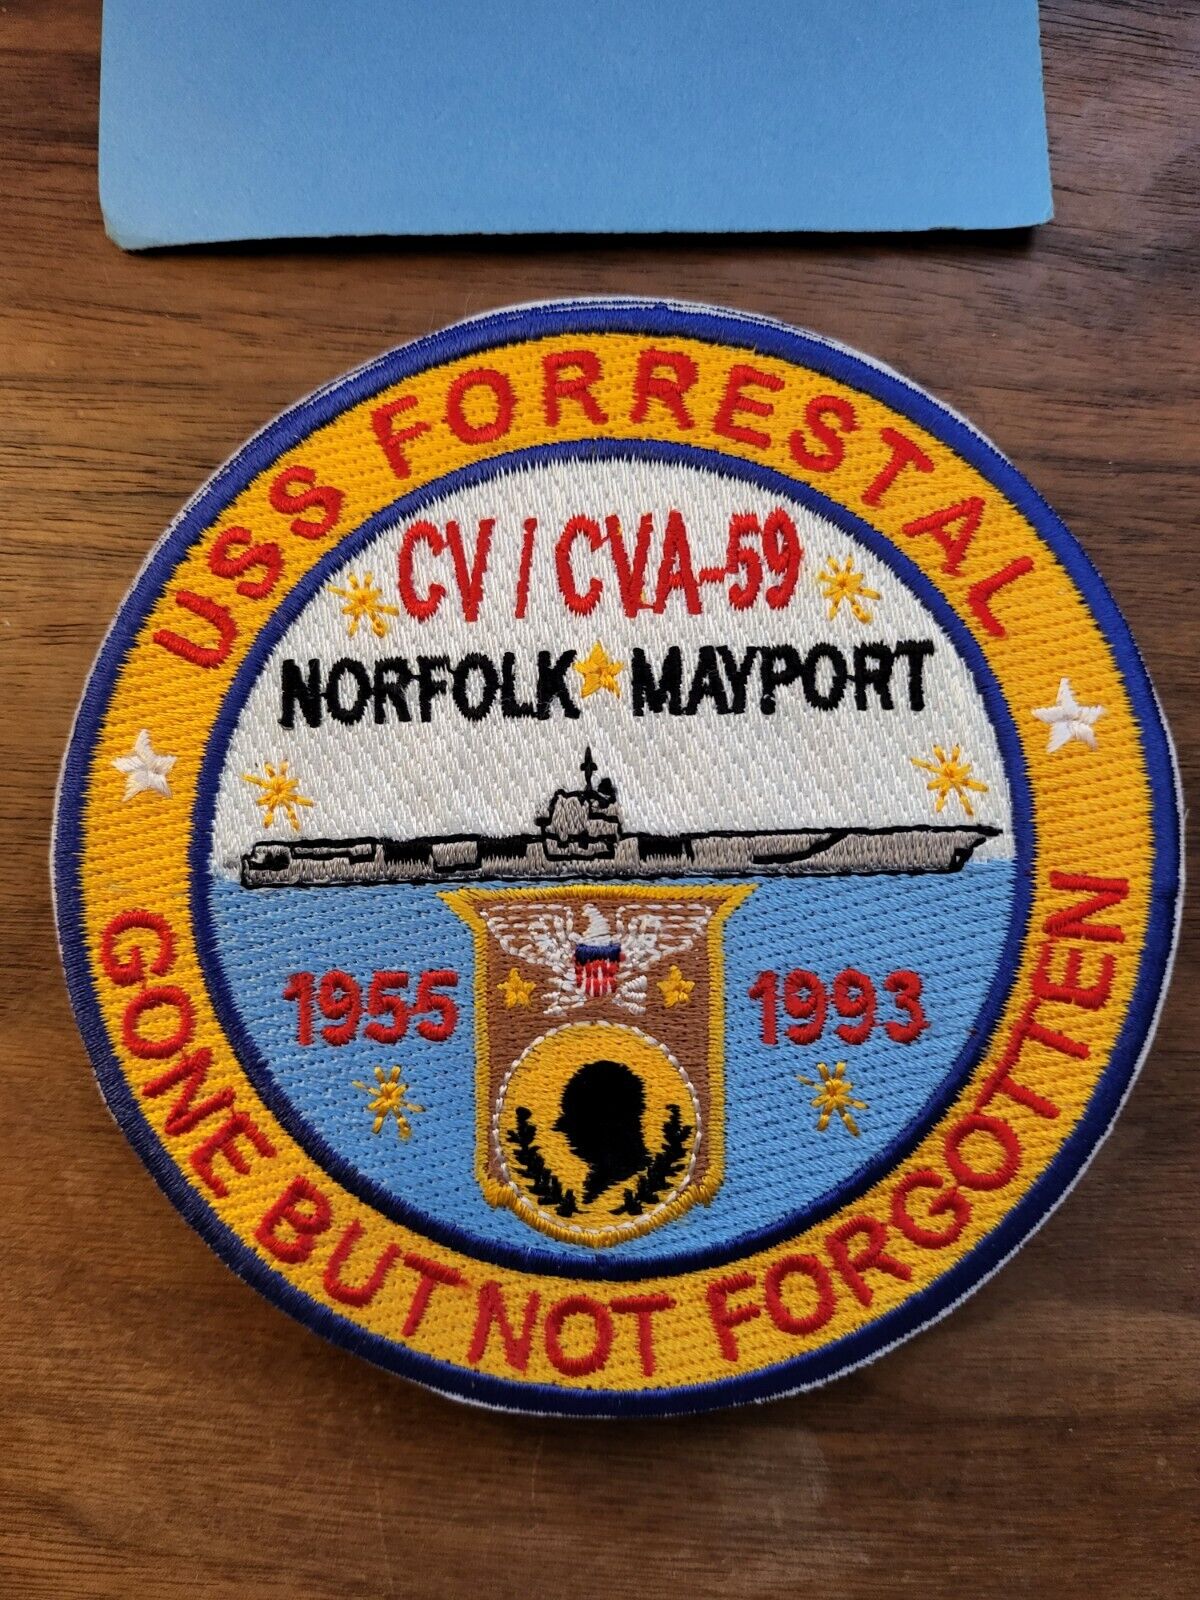 USS FORRESTAL, CV/CVA-59, NORFOLK MAYPORT, GONE BUT NOT FORGOTTEN